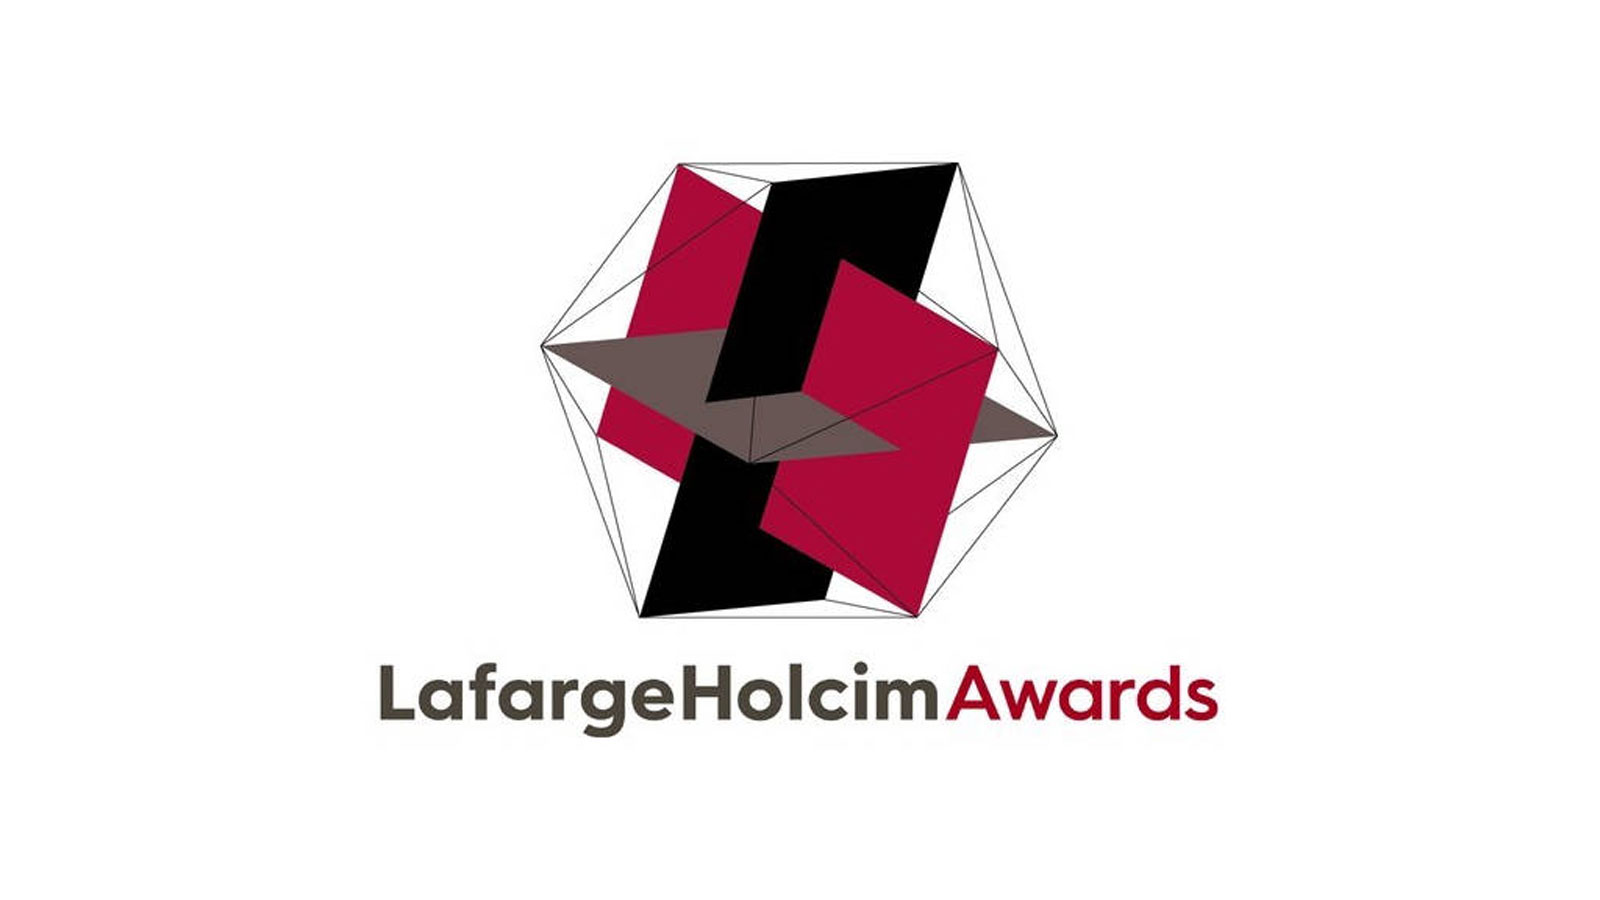 Lancement des LafargeHolcim Awards  Objectif : récompenser des projets de construction durable